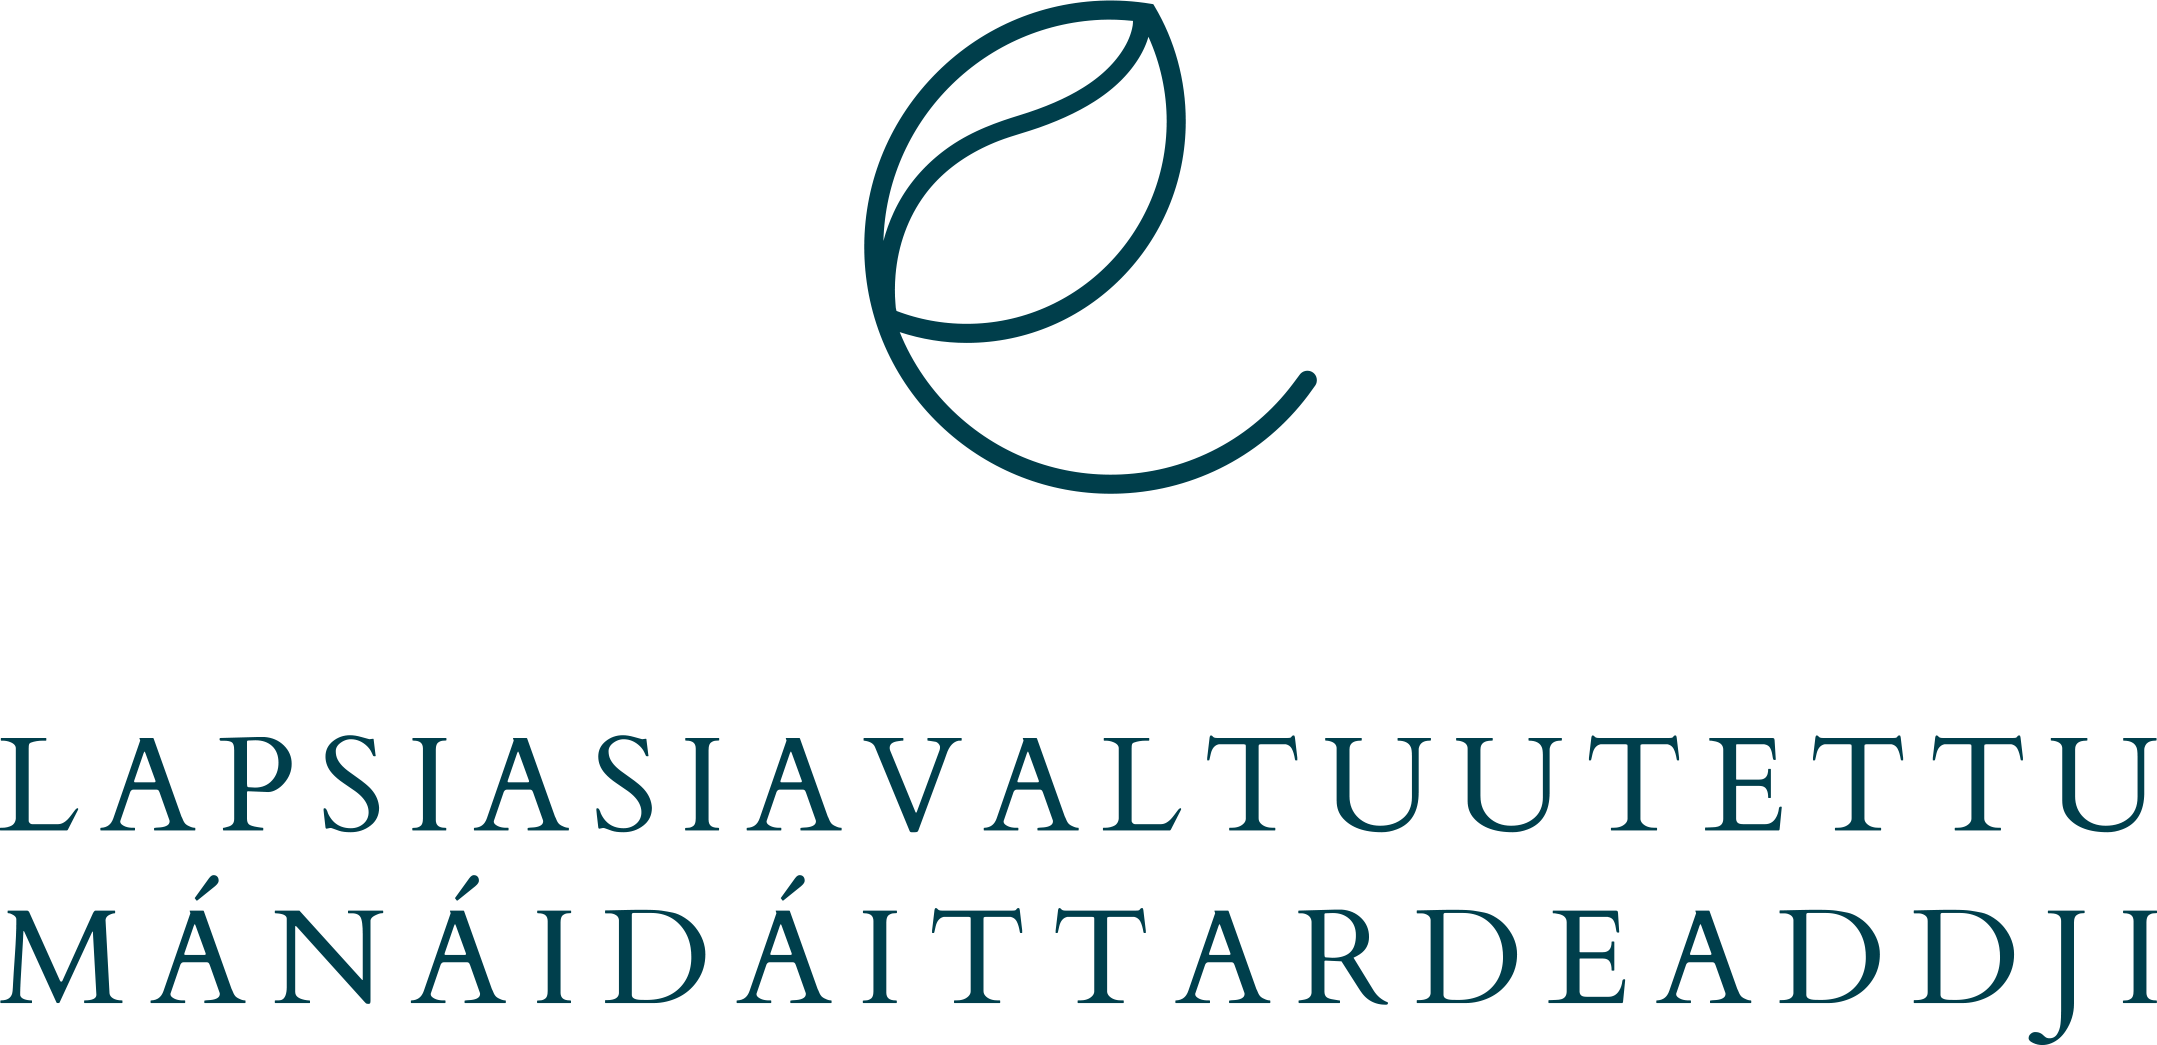 Lapsiasiavaltuutetun logo suomeksi ja pohjoissaameksi: Lapsiasiavaltuutettu / Mánáidáittardeaddji